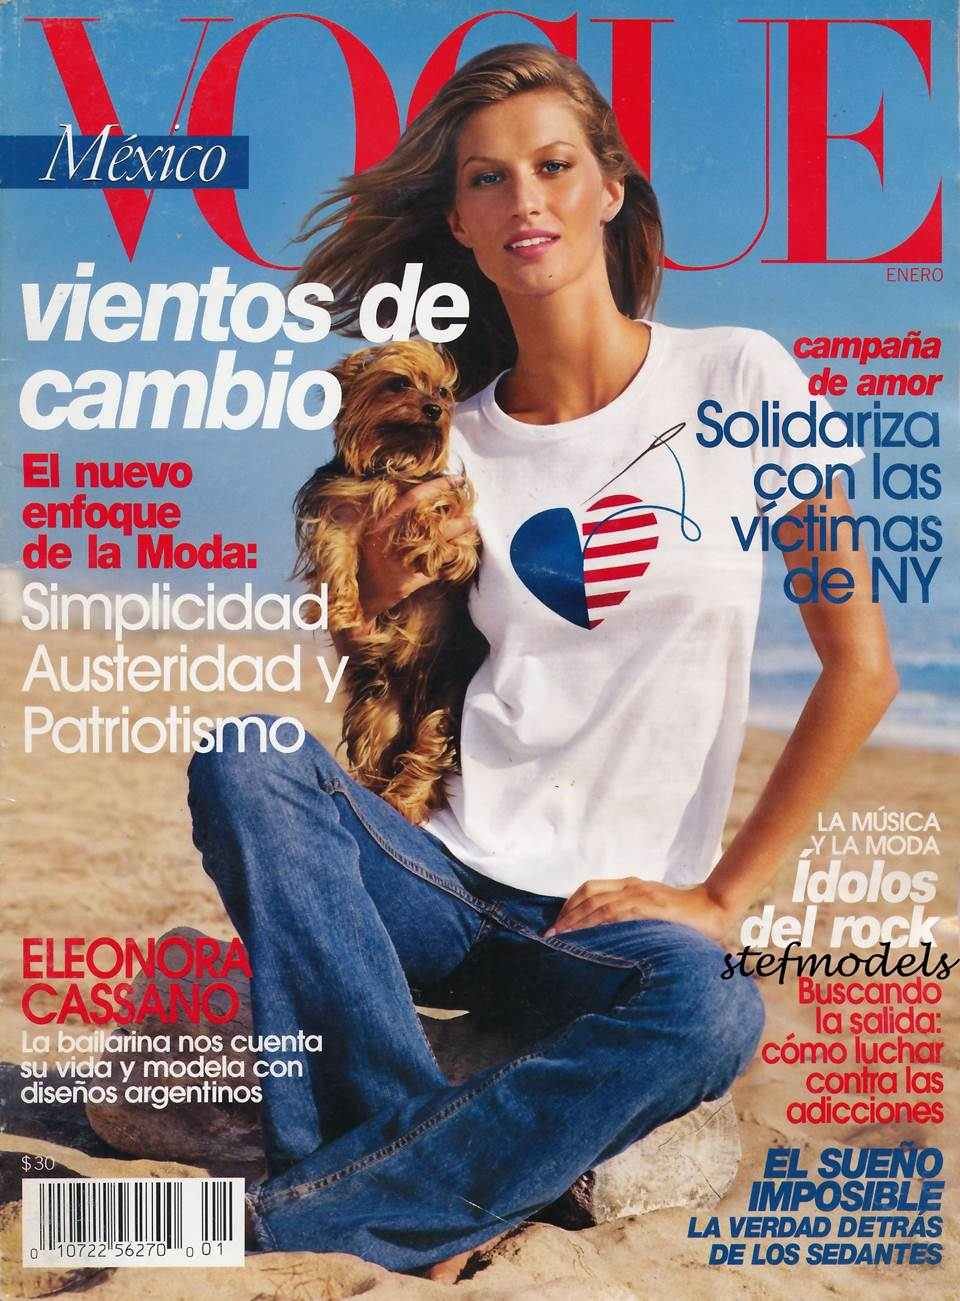 Reprodução/Vogue Mexico